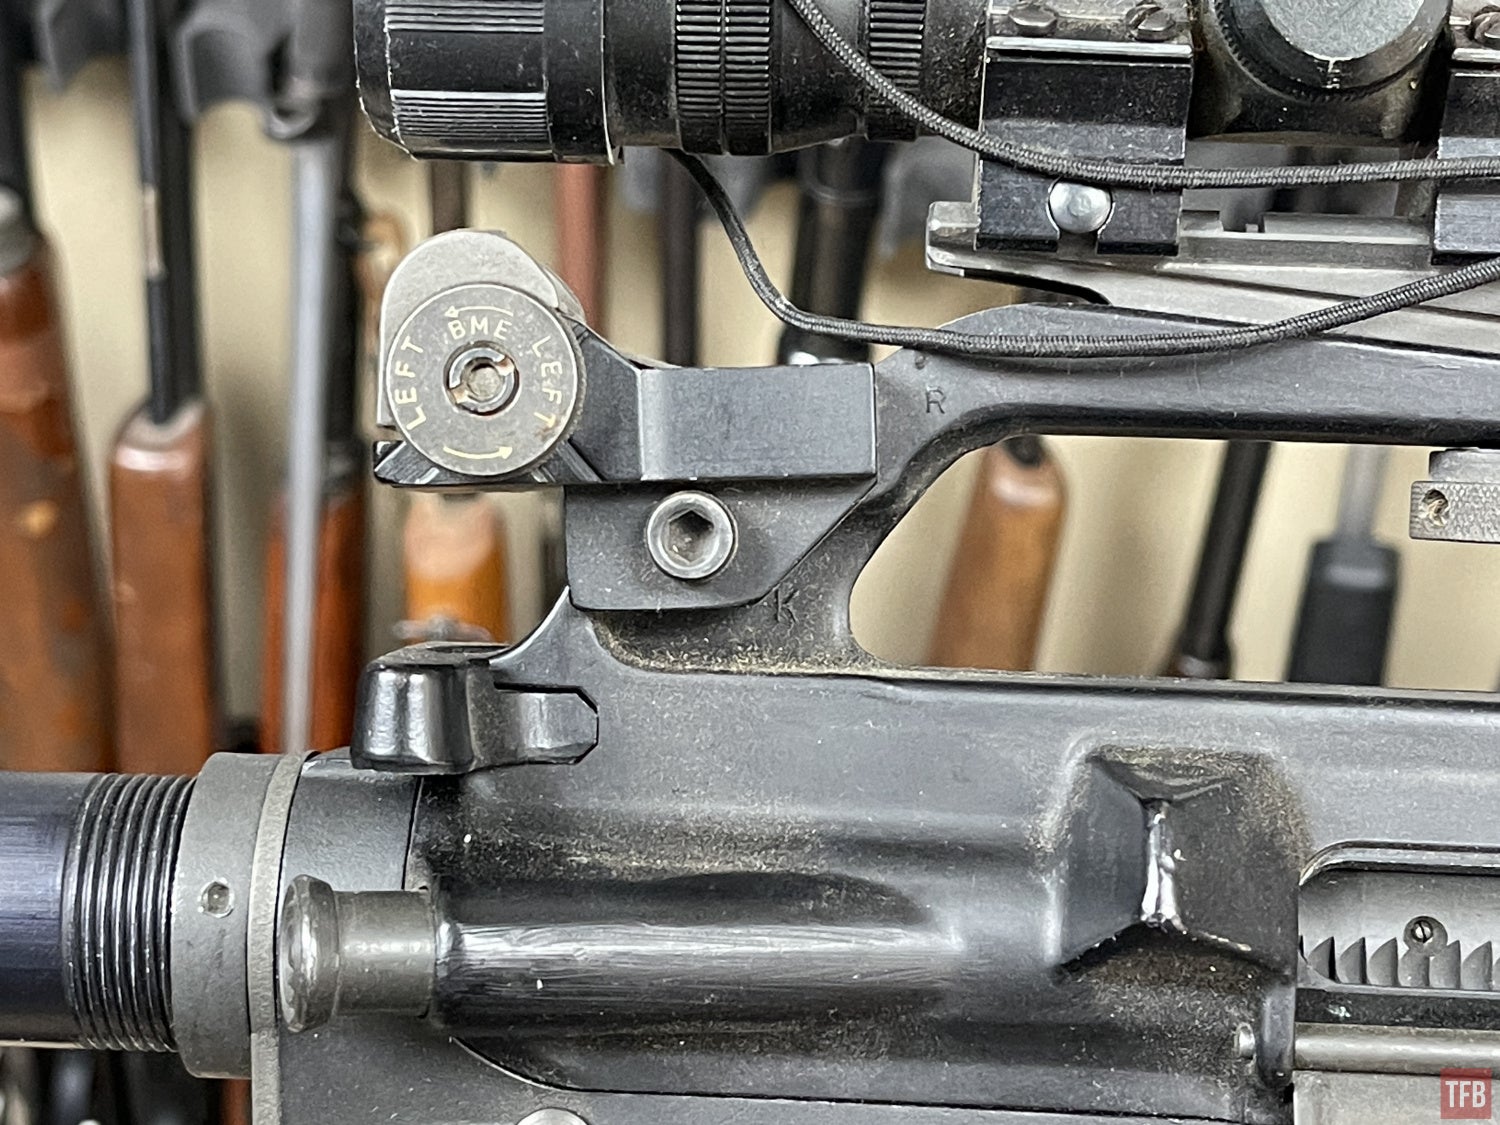 M1AR15 rear sight carry handle